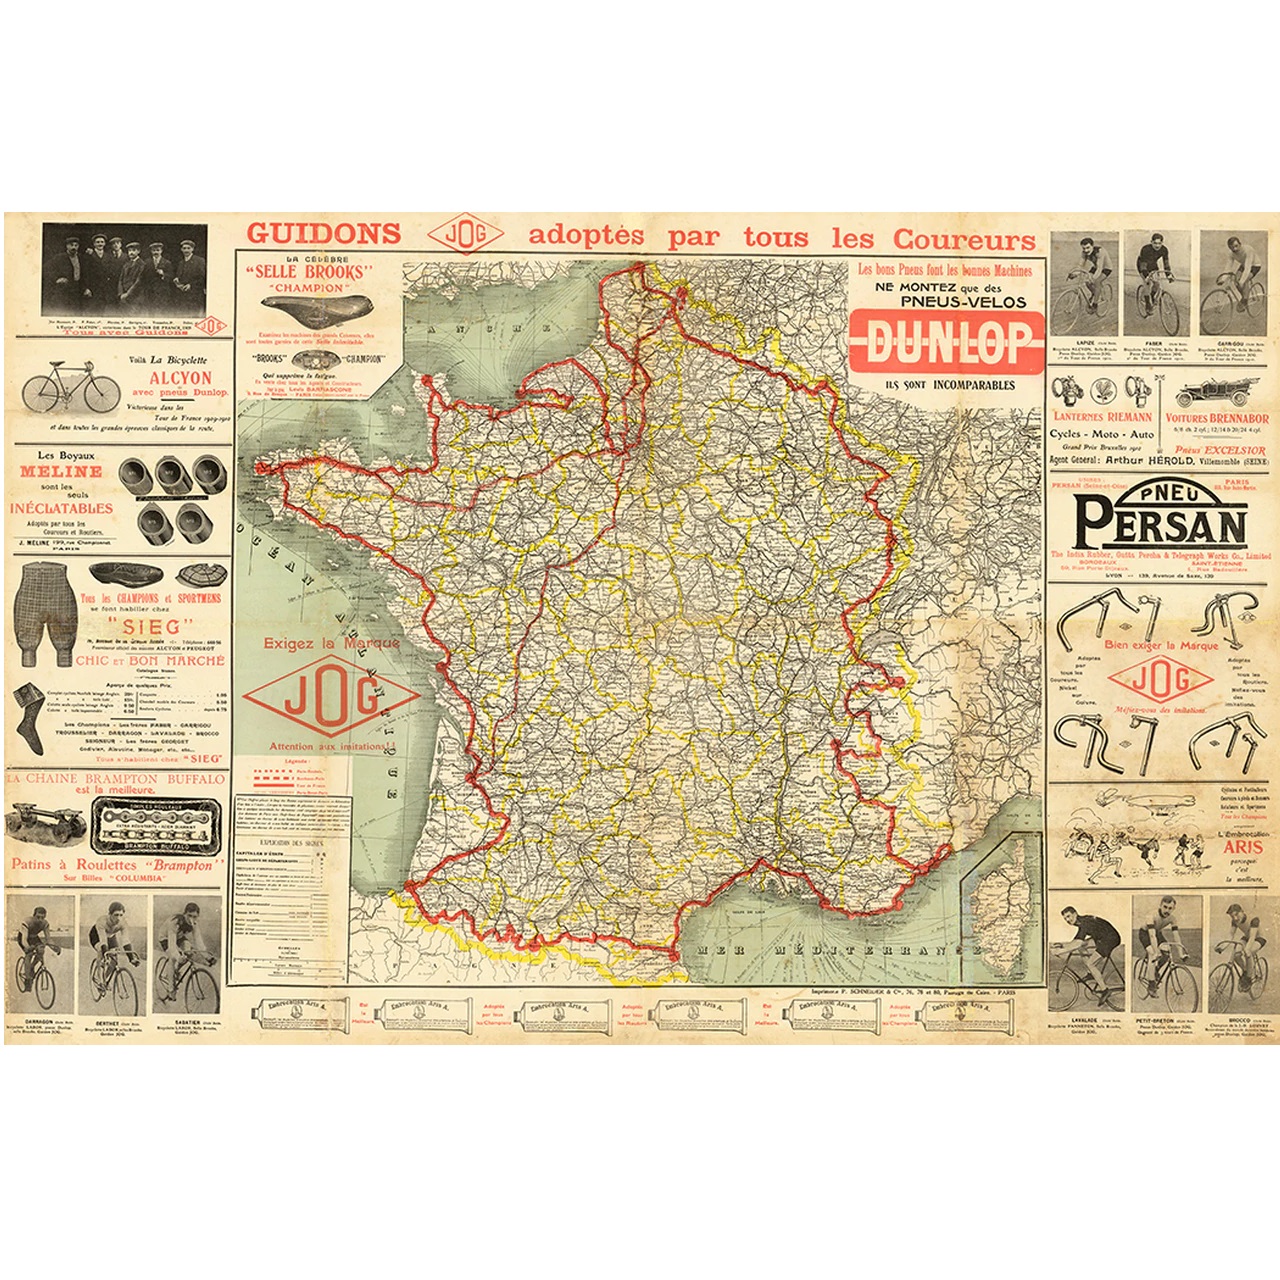 1911 Tour de France (TDF) Route Map Poster 30" x 20"